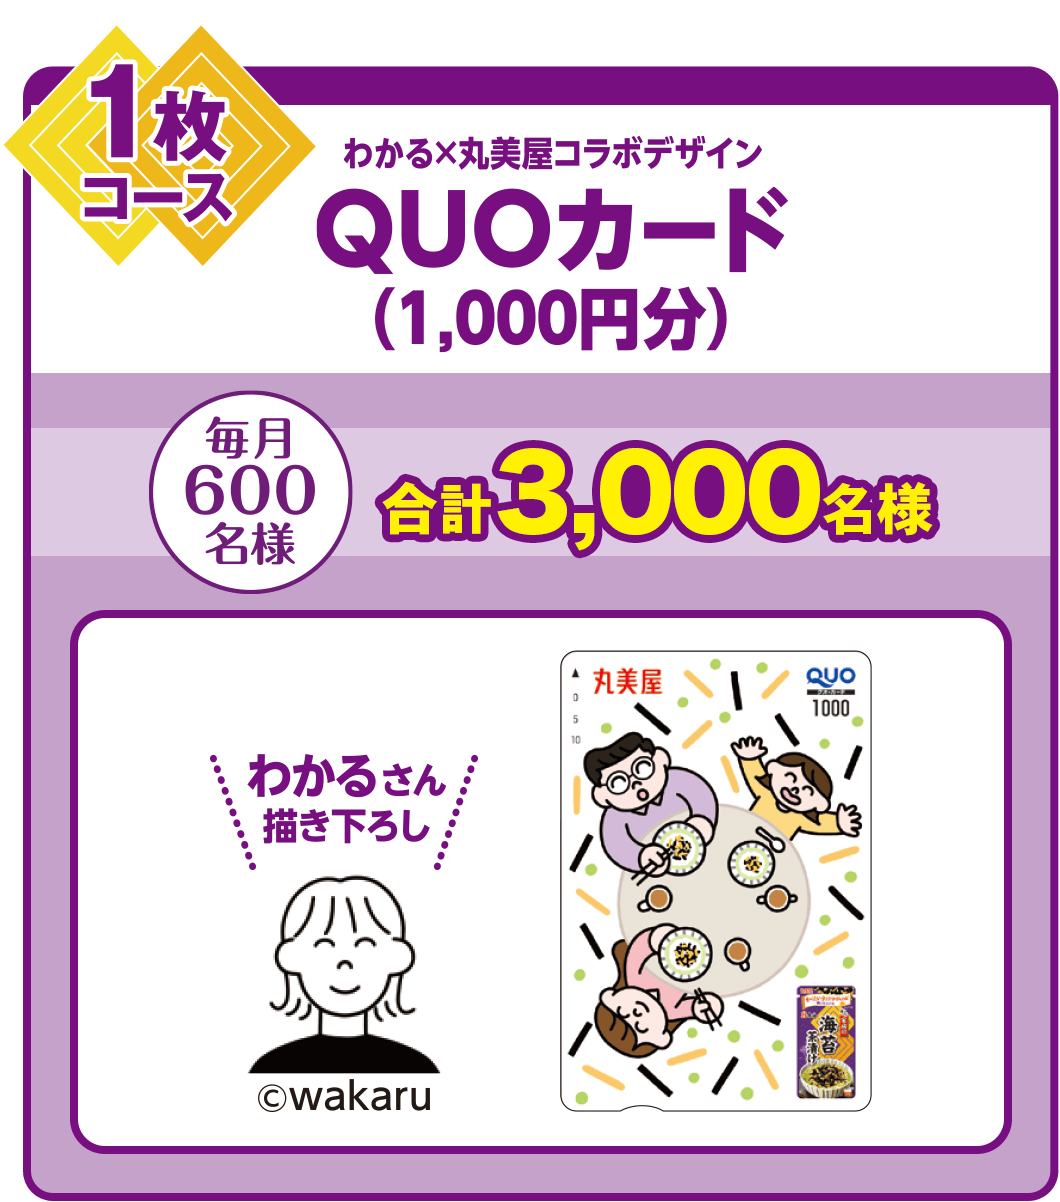 丸美屋オリジナル 木村佳乃QUOカード(1,000円分) 合計3,000名様 毎月600名様 1枚コース